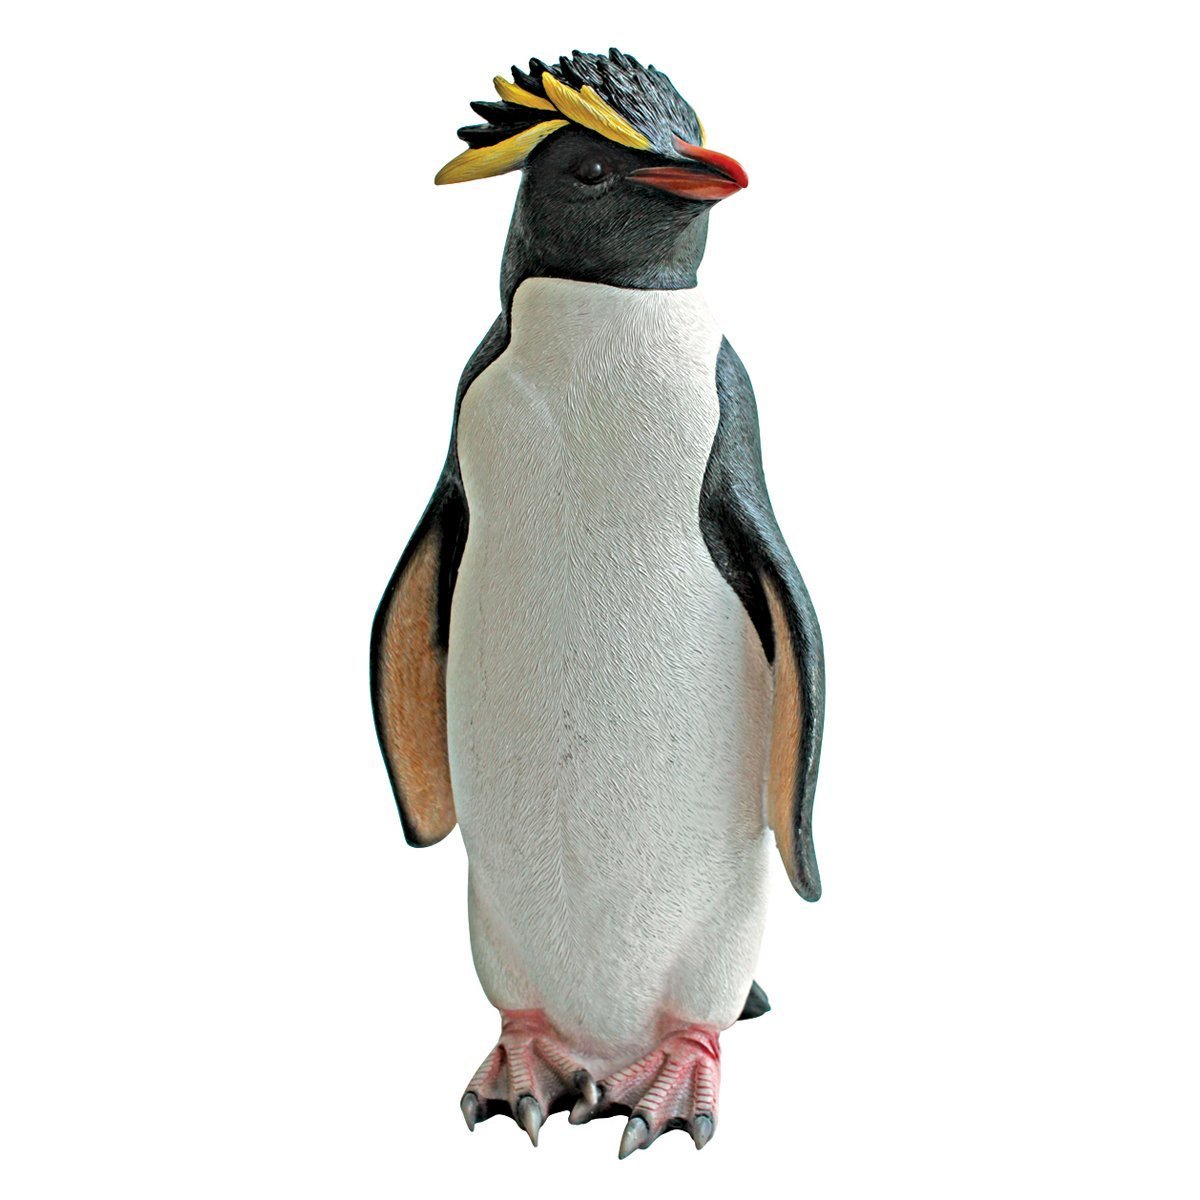 楽天市場西洋動物彫刻 ロックホッパー イワトビ ペンギンの像 多色